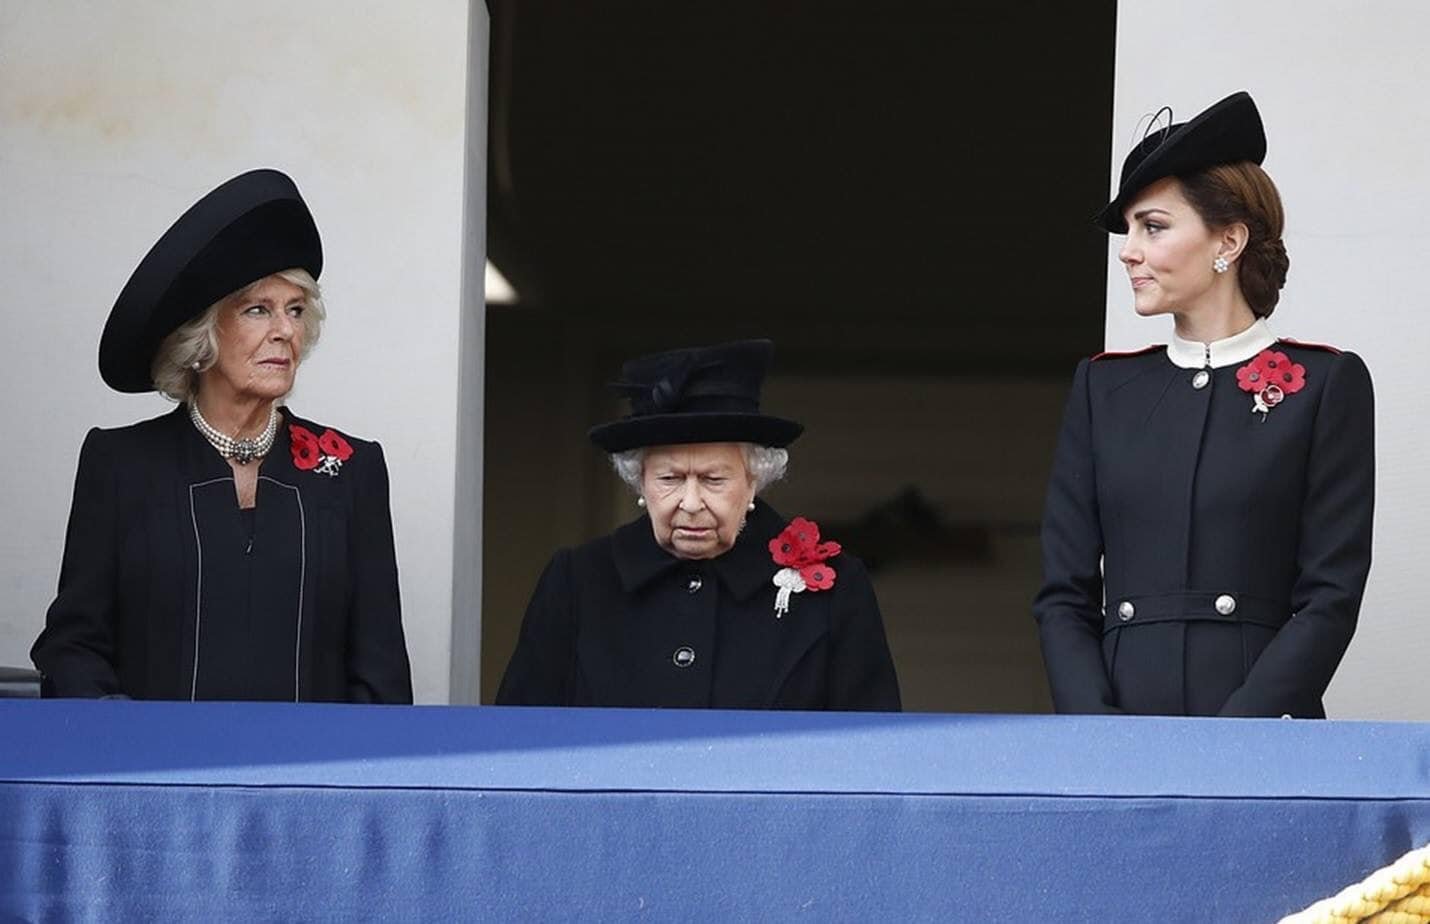 როგორი ურთიერთობა აქვთ დიდი ბრიტანეთის სამეფო ოჯახის ქალებს? - ფოტო, რომელიც ყველაფერზე მეტყველებს